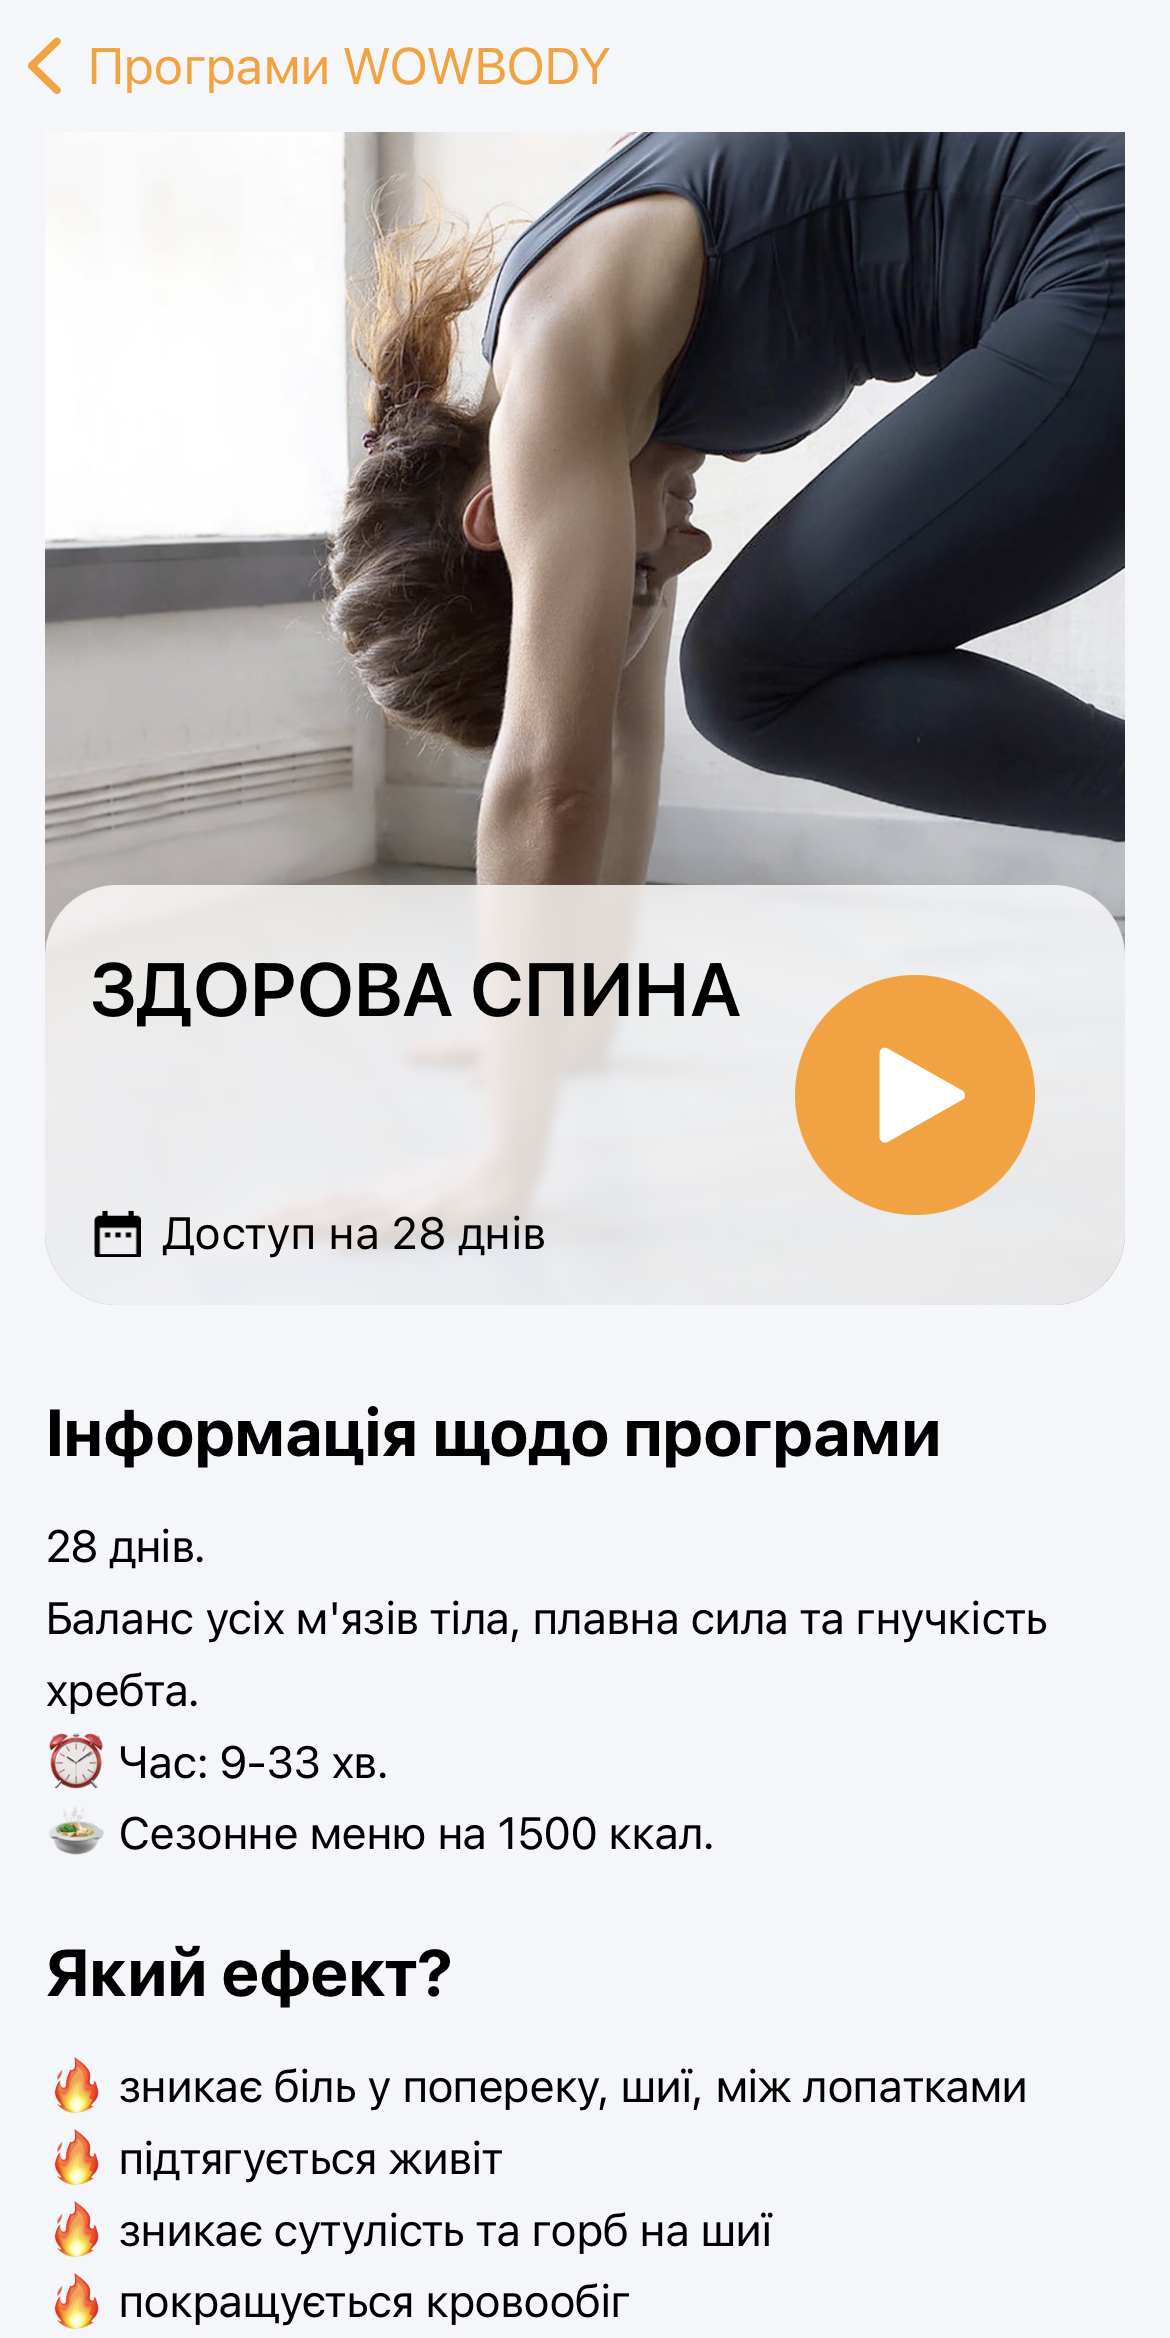 7 украинских приложений, тренирующих дух и тело – медитации, зарядка для мозга, тренировки